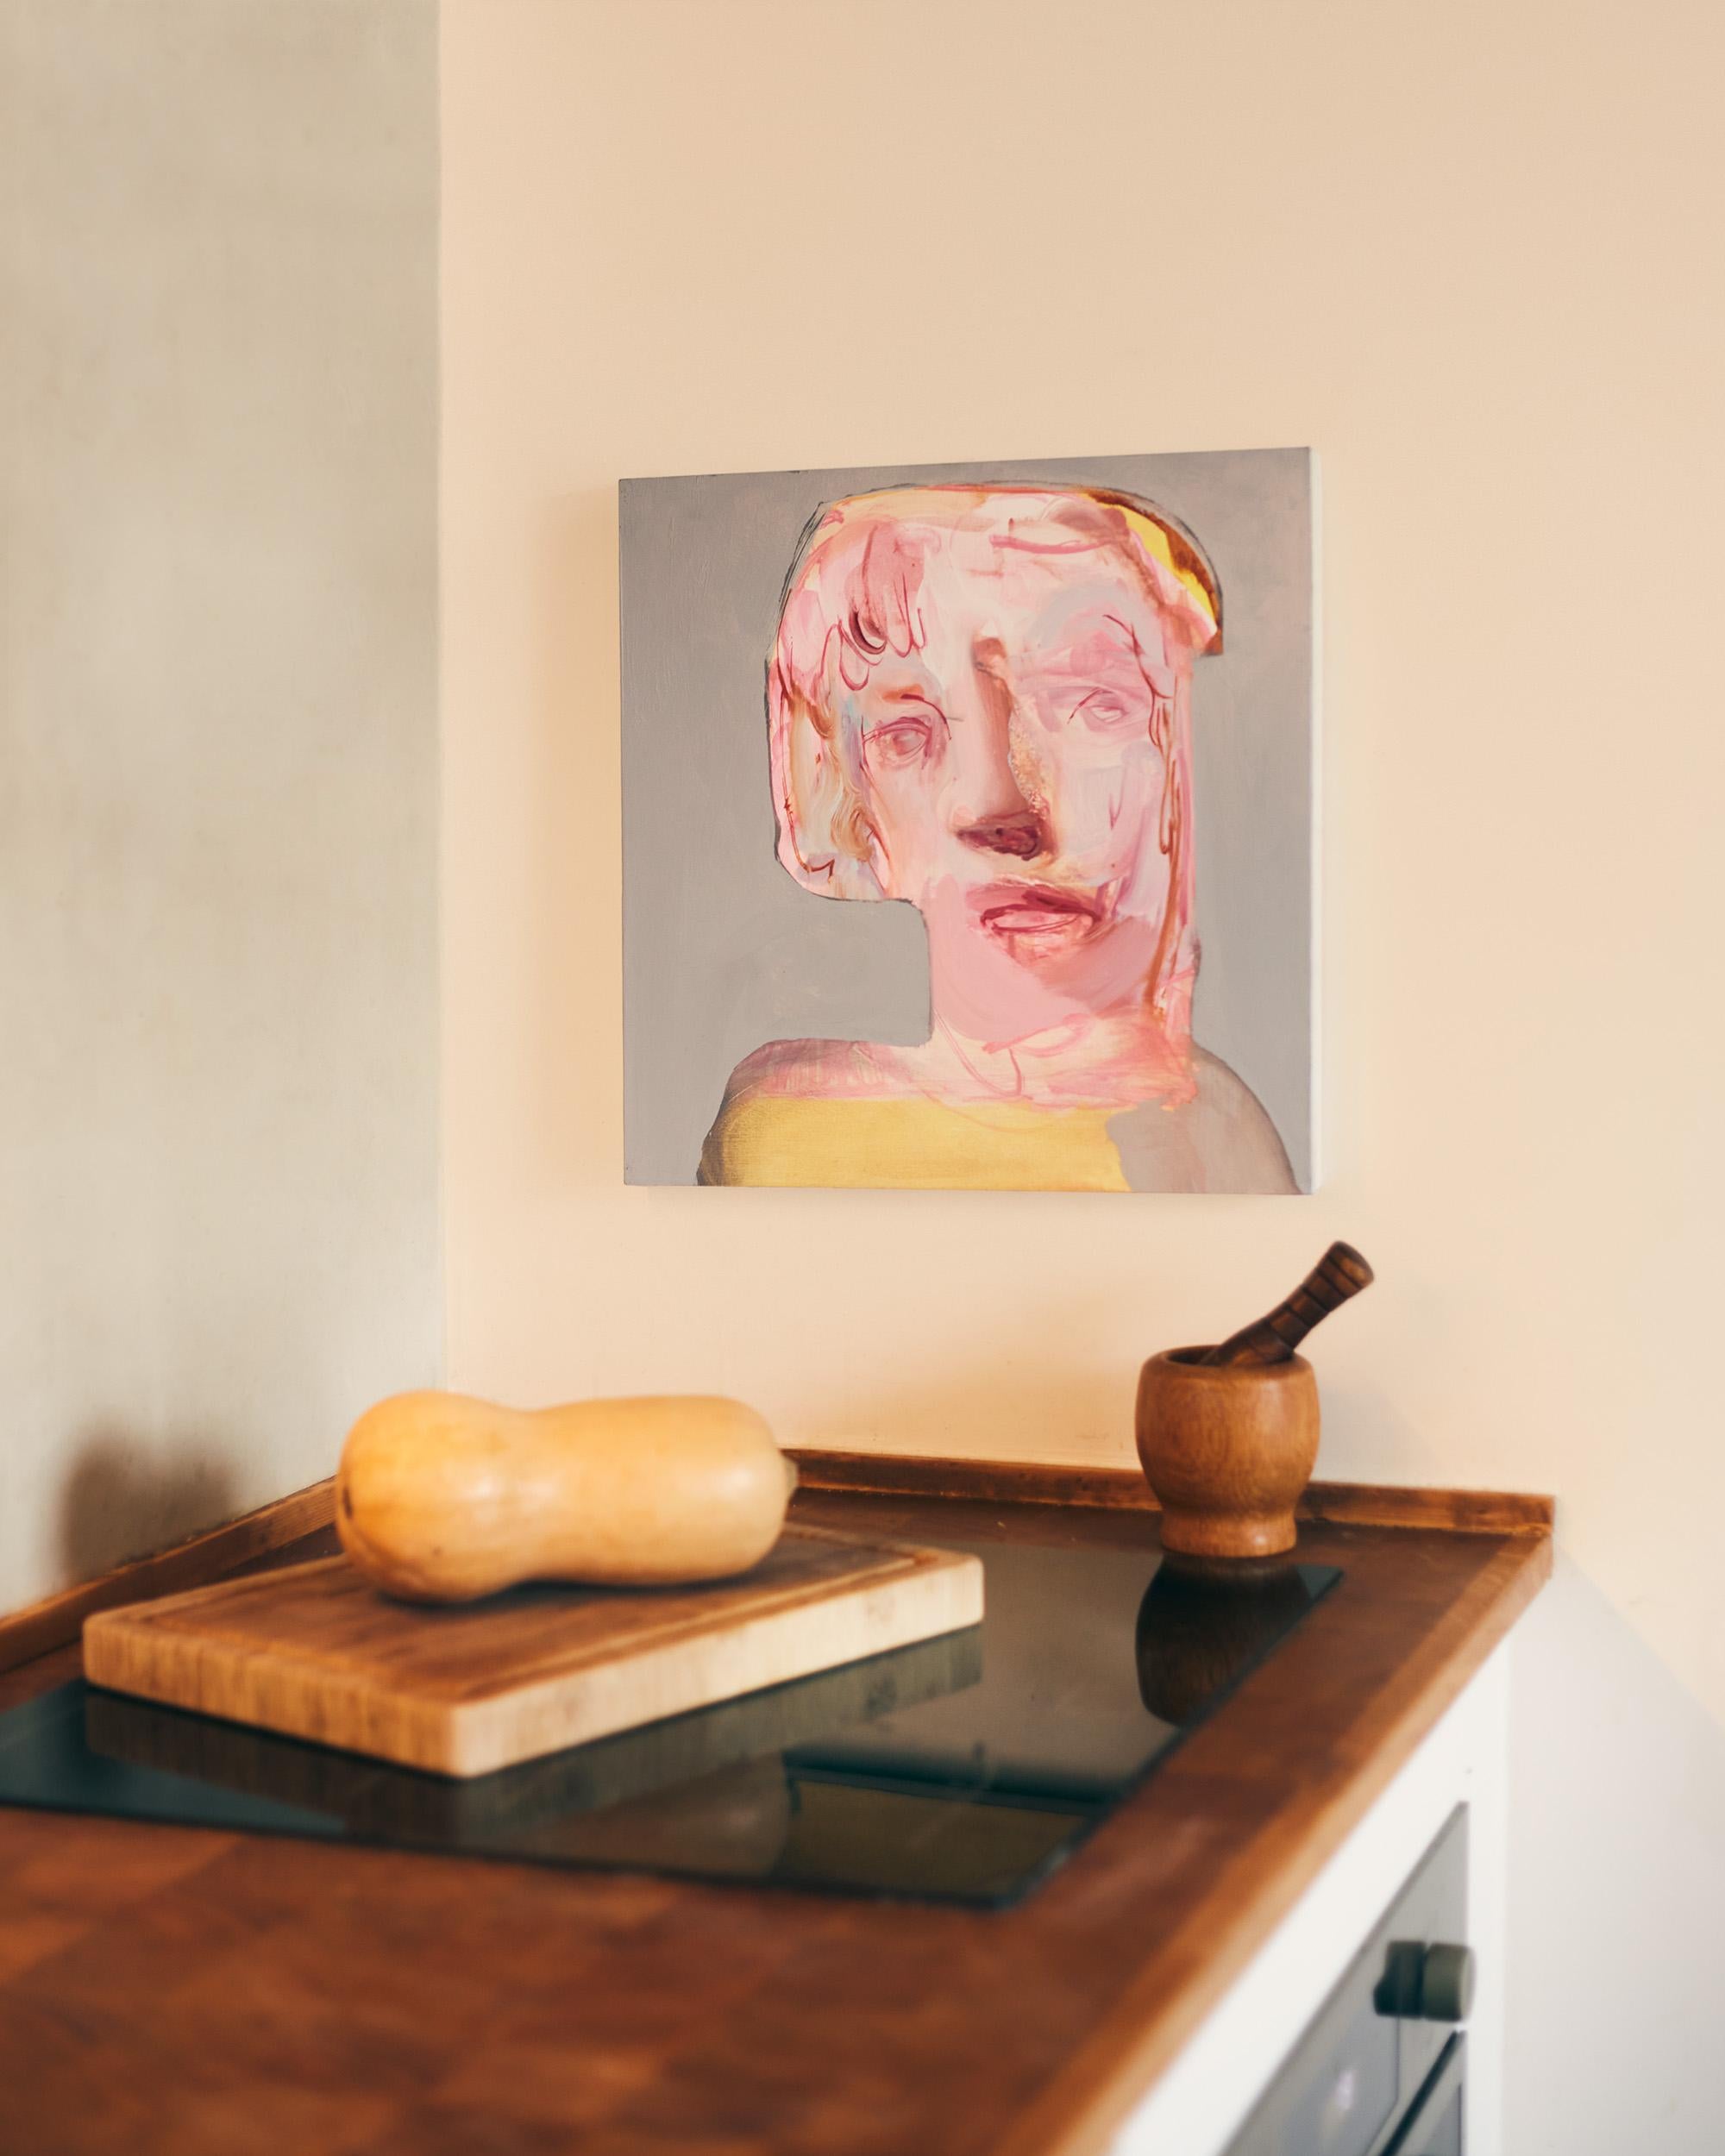 Jeune femme blonde - Contemporary oil on canvas portrait painting, 2020 - Painting by Etienne François